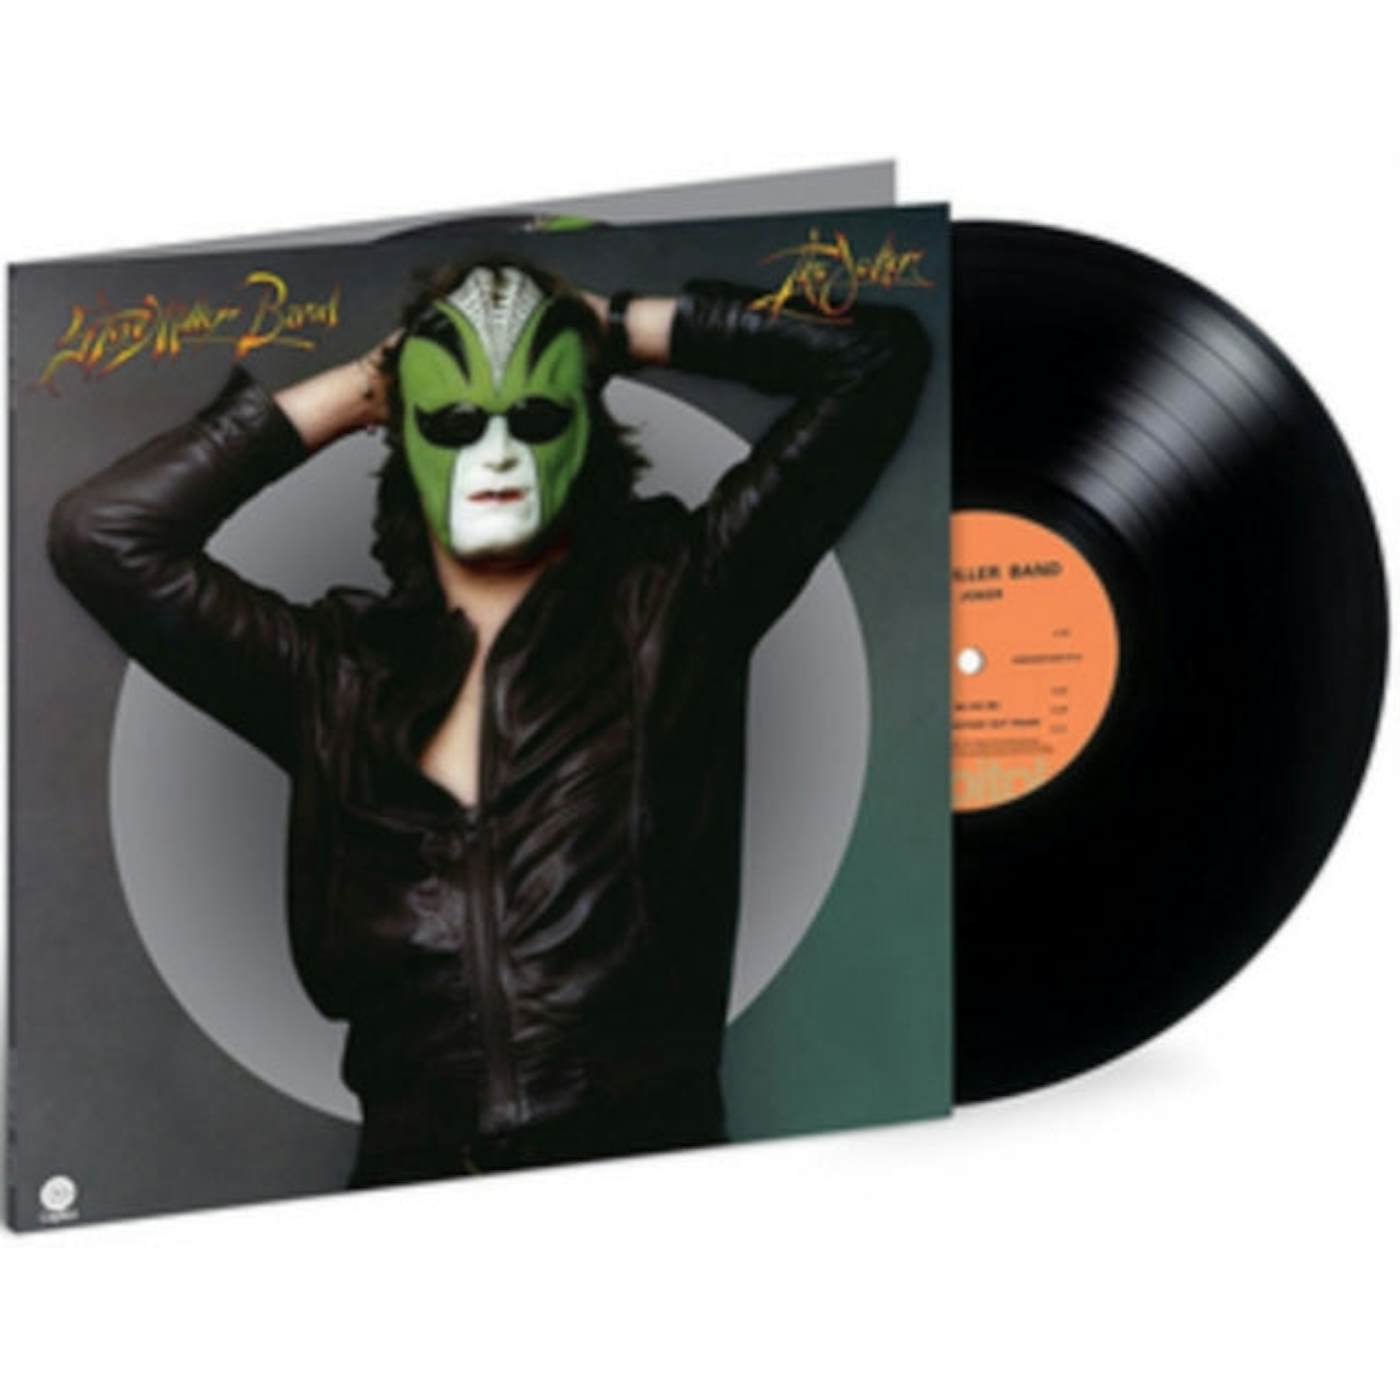 Steve Miller Band LP Vinyl Record - The Joker